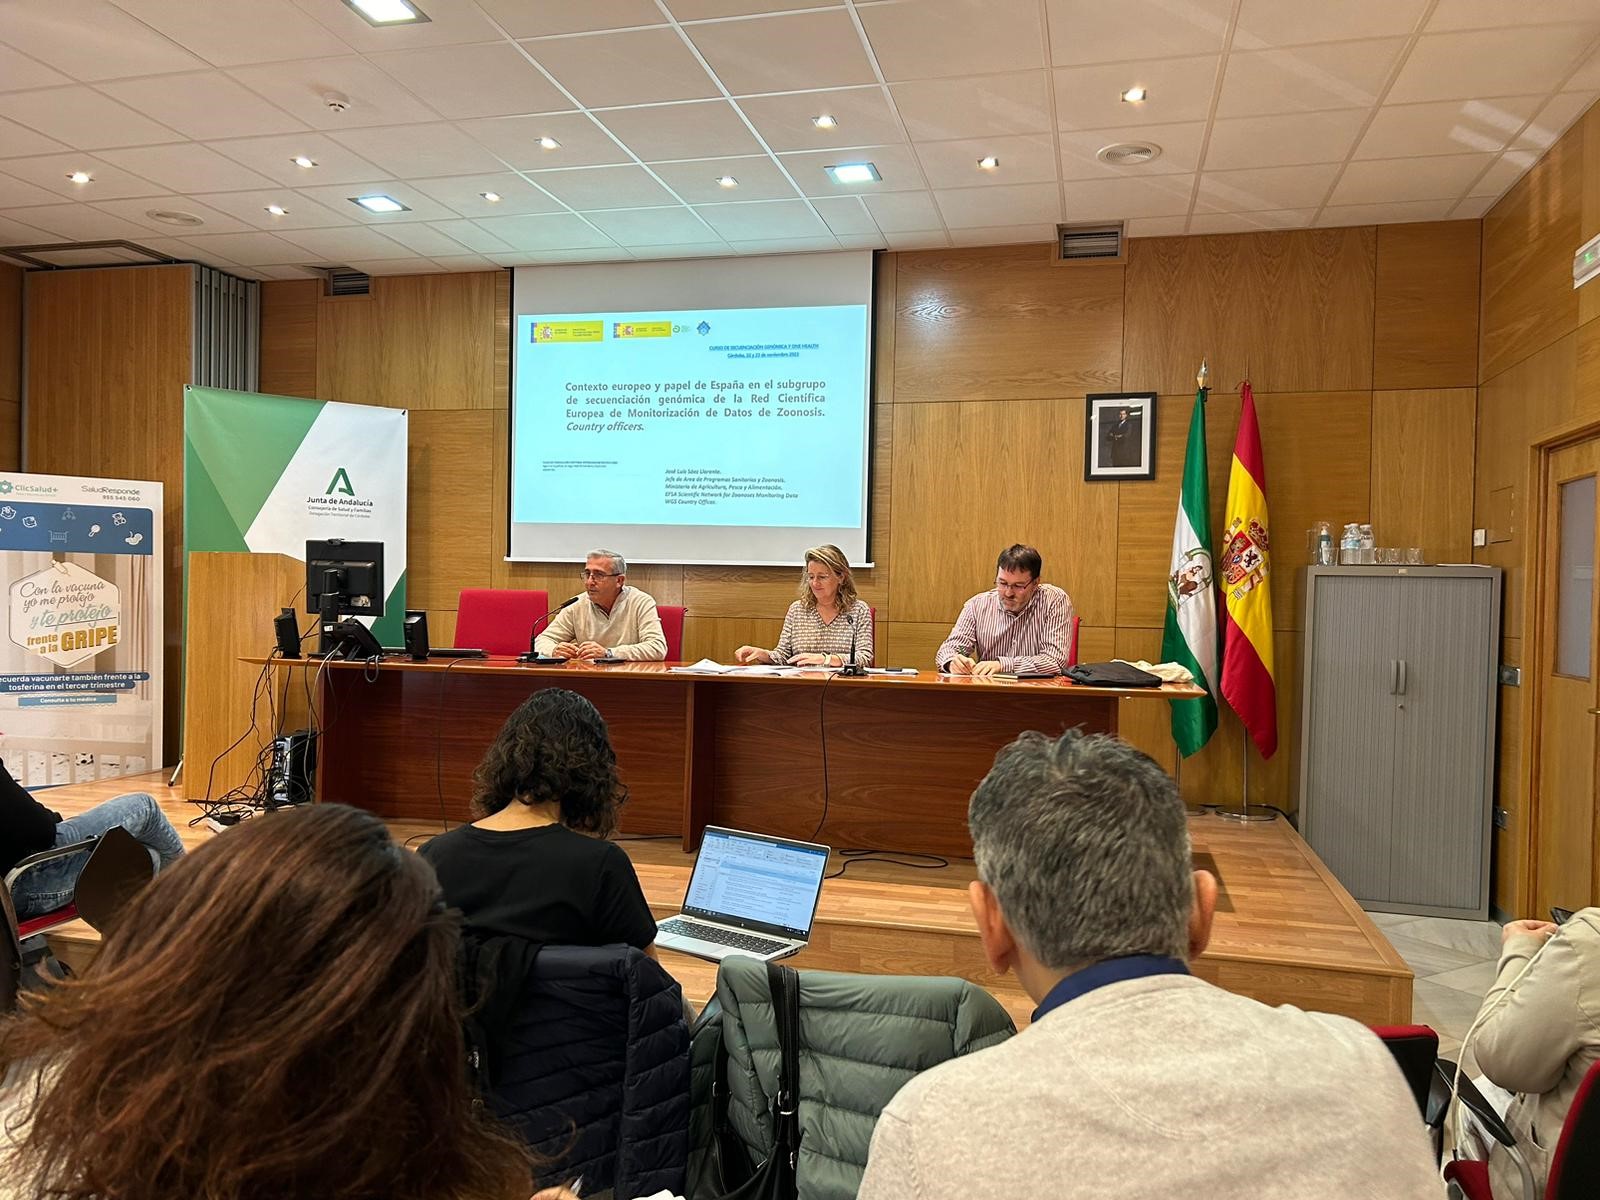 Celebración de la 1ª edición del curso de secuenciación genómica y One Health organizado por la Agencia Española de Seguridad Alimentaria y Nutrición (AESAN)